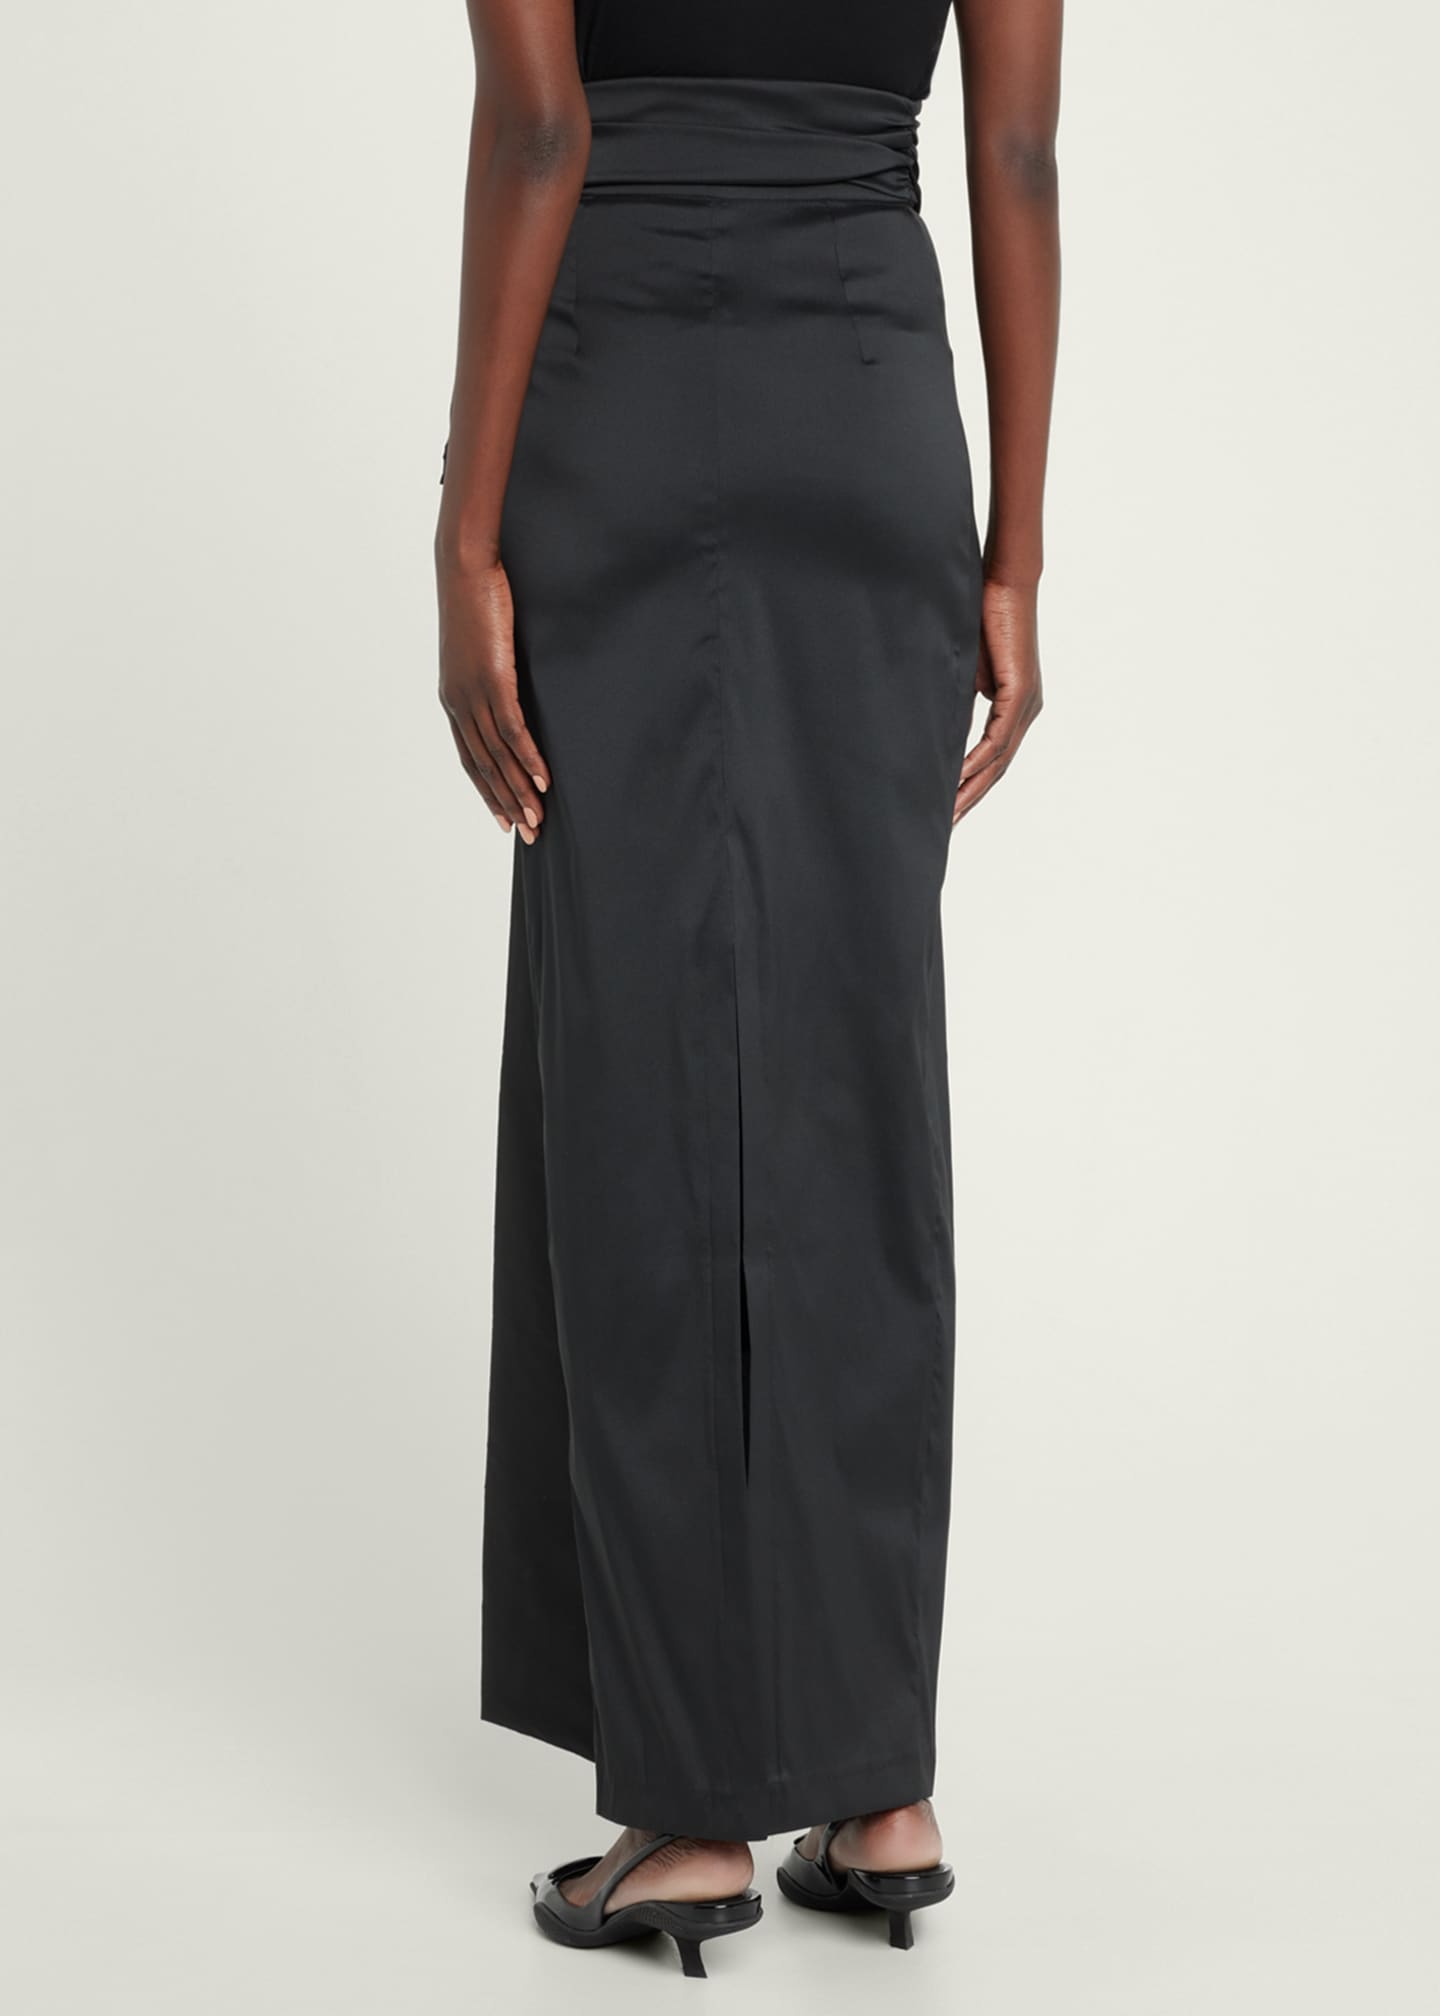 BERNADETTE Taffeta Maxi Skirt w/ Bow Detail - Bergdorf Goodman